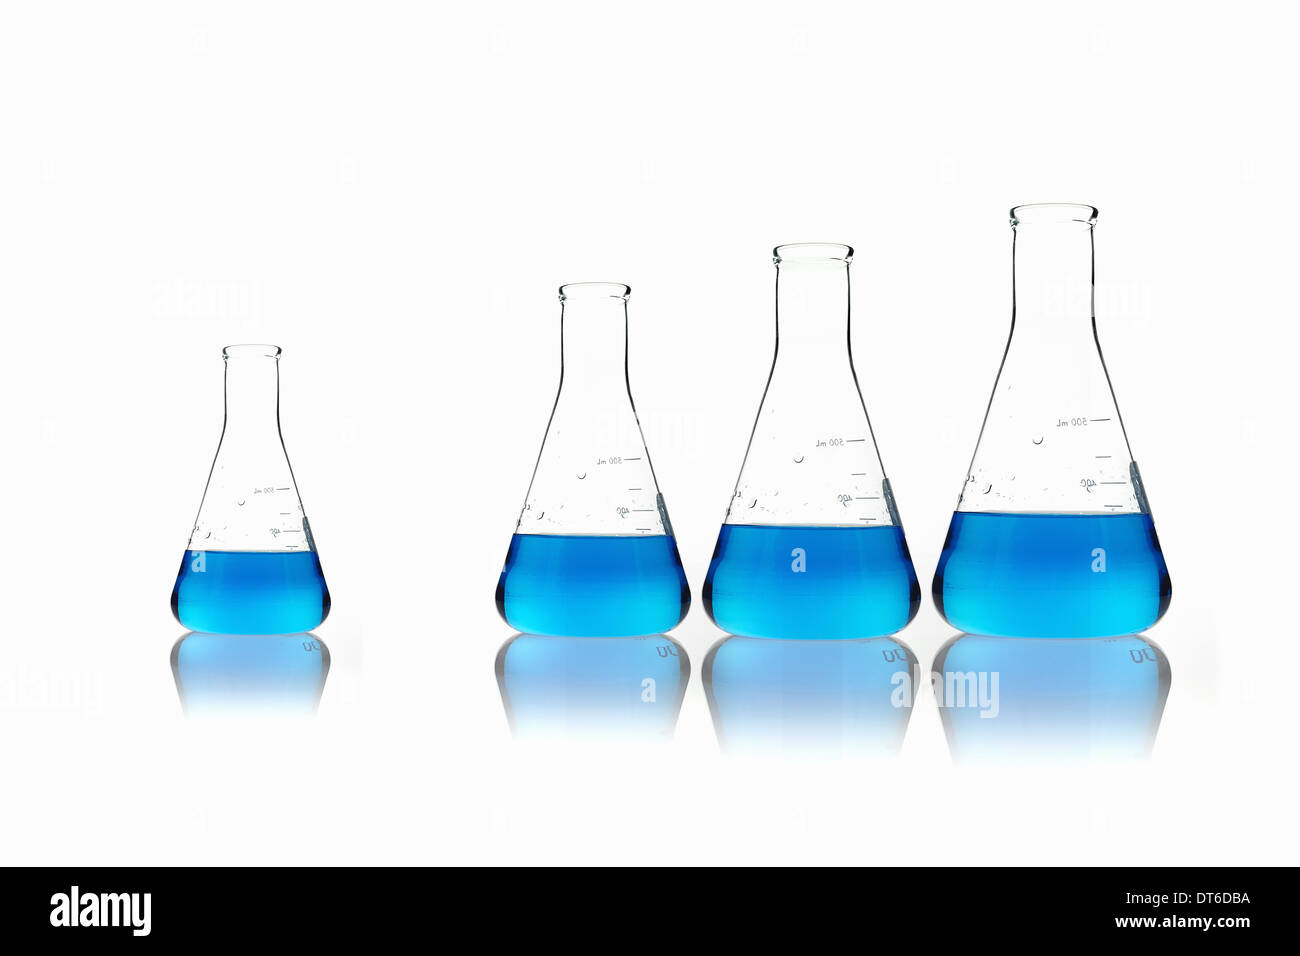 Manchons coniques en verre flacons scientifique holding blue liquides. Alignés en ordre de taille, avec l'un mis à part. Banque D'Images